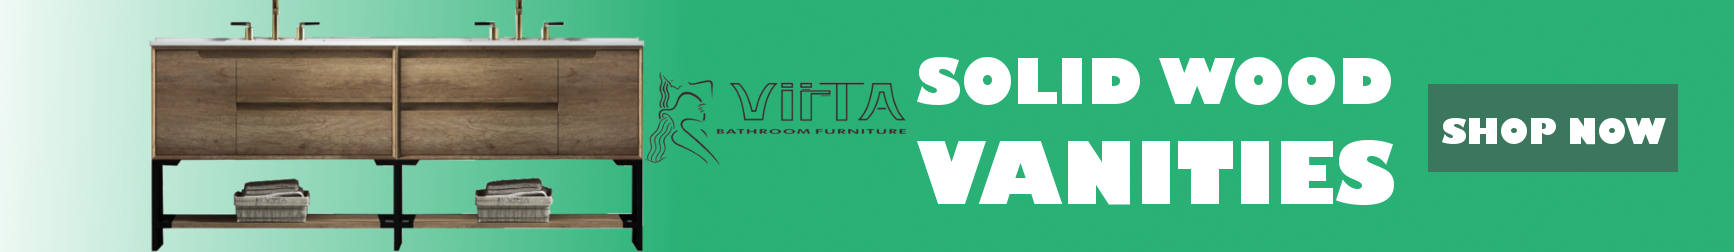 Double Vanities by Virta